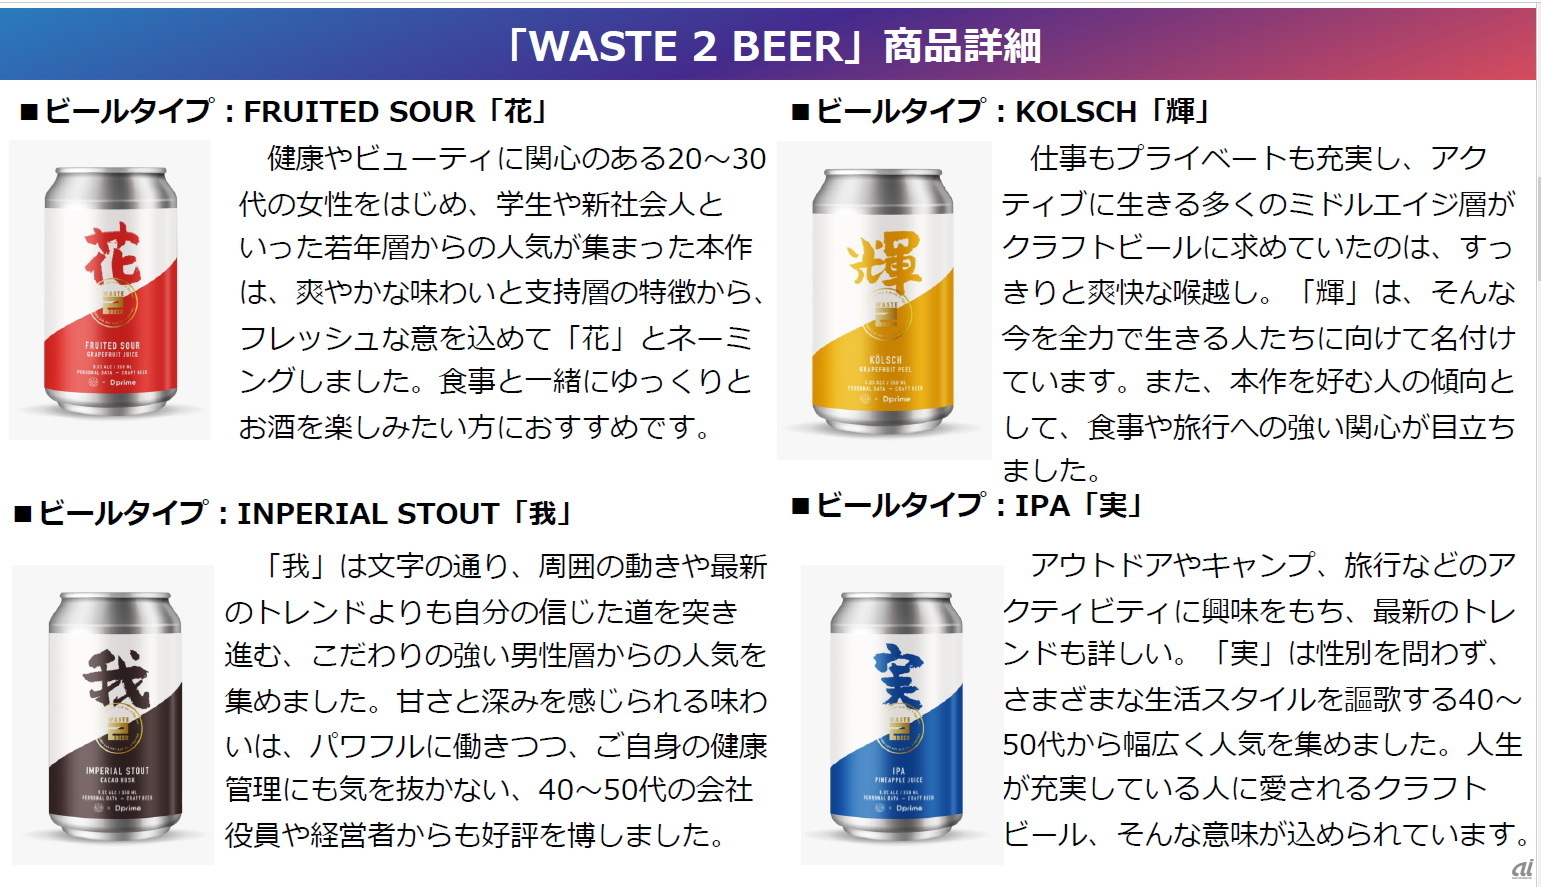 サステナブルビール「WASTE 2 BEER」の商品ラインアップ